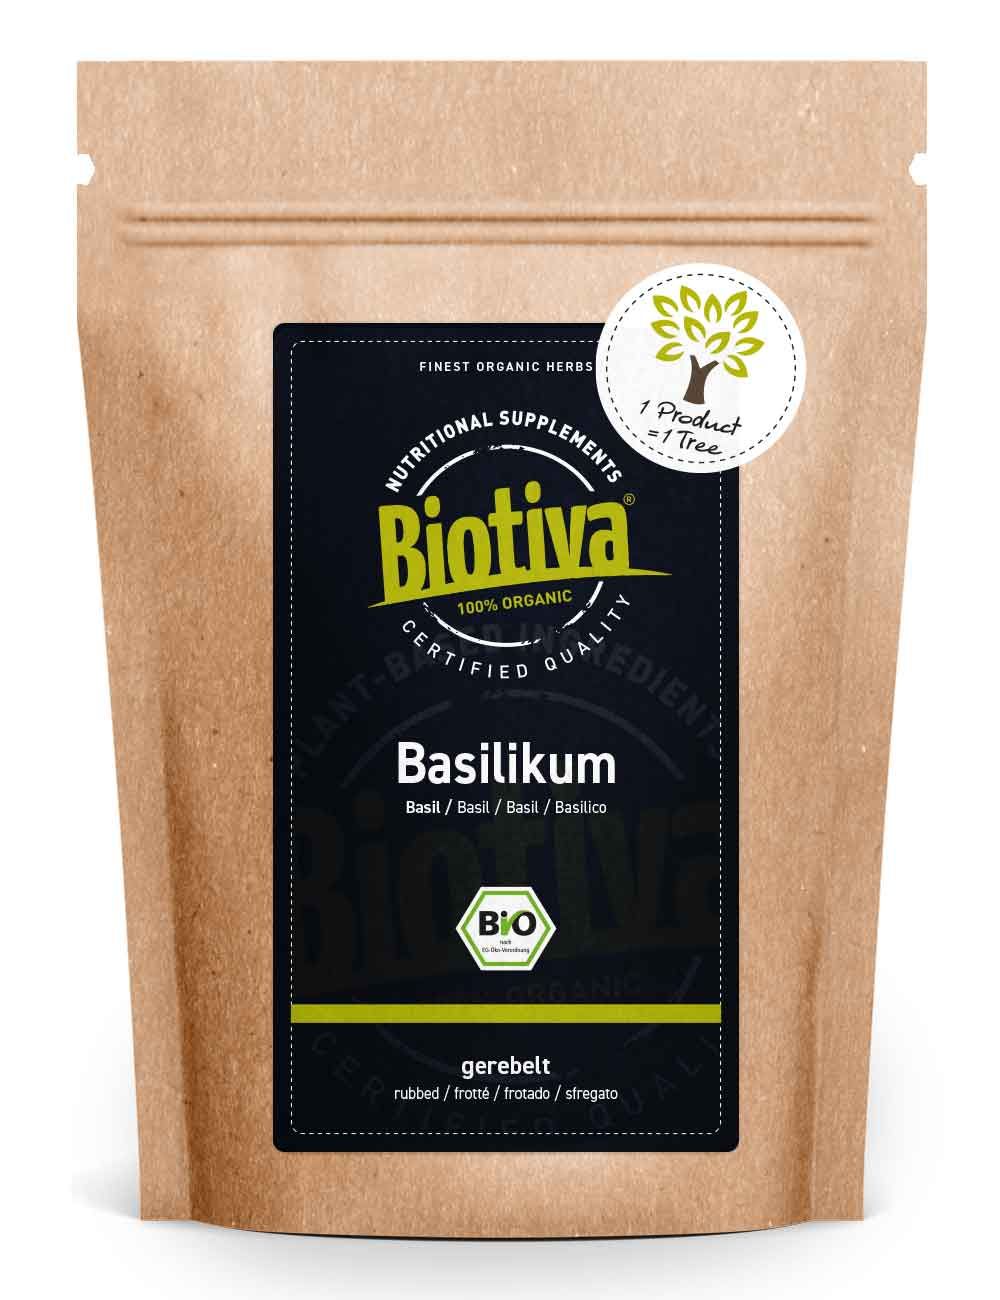 Biotiva Basilikum gerebelt Bio